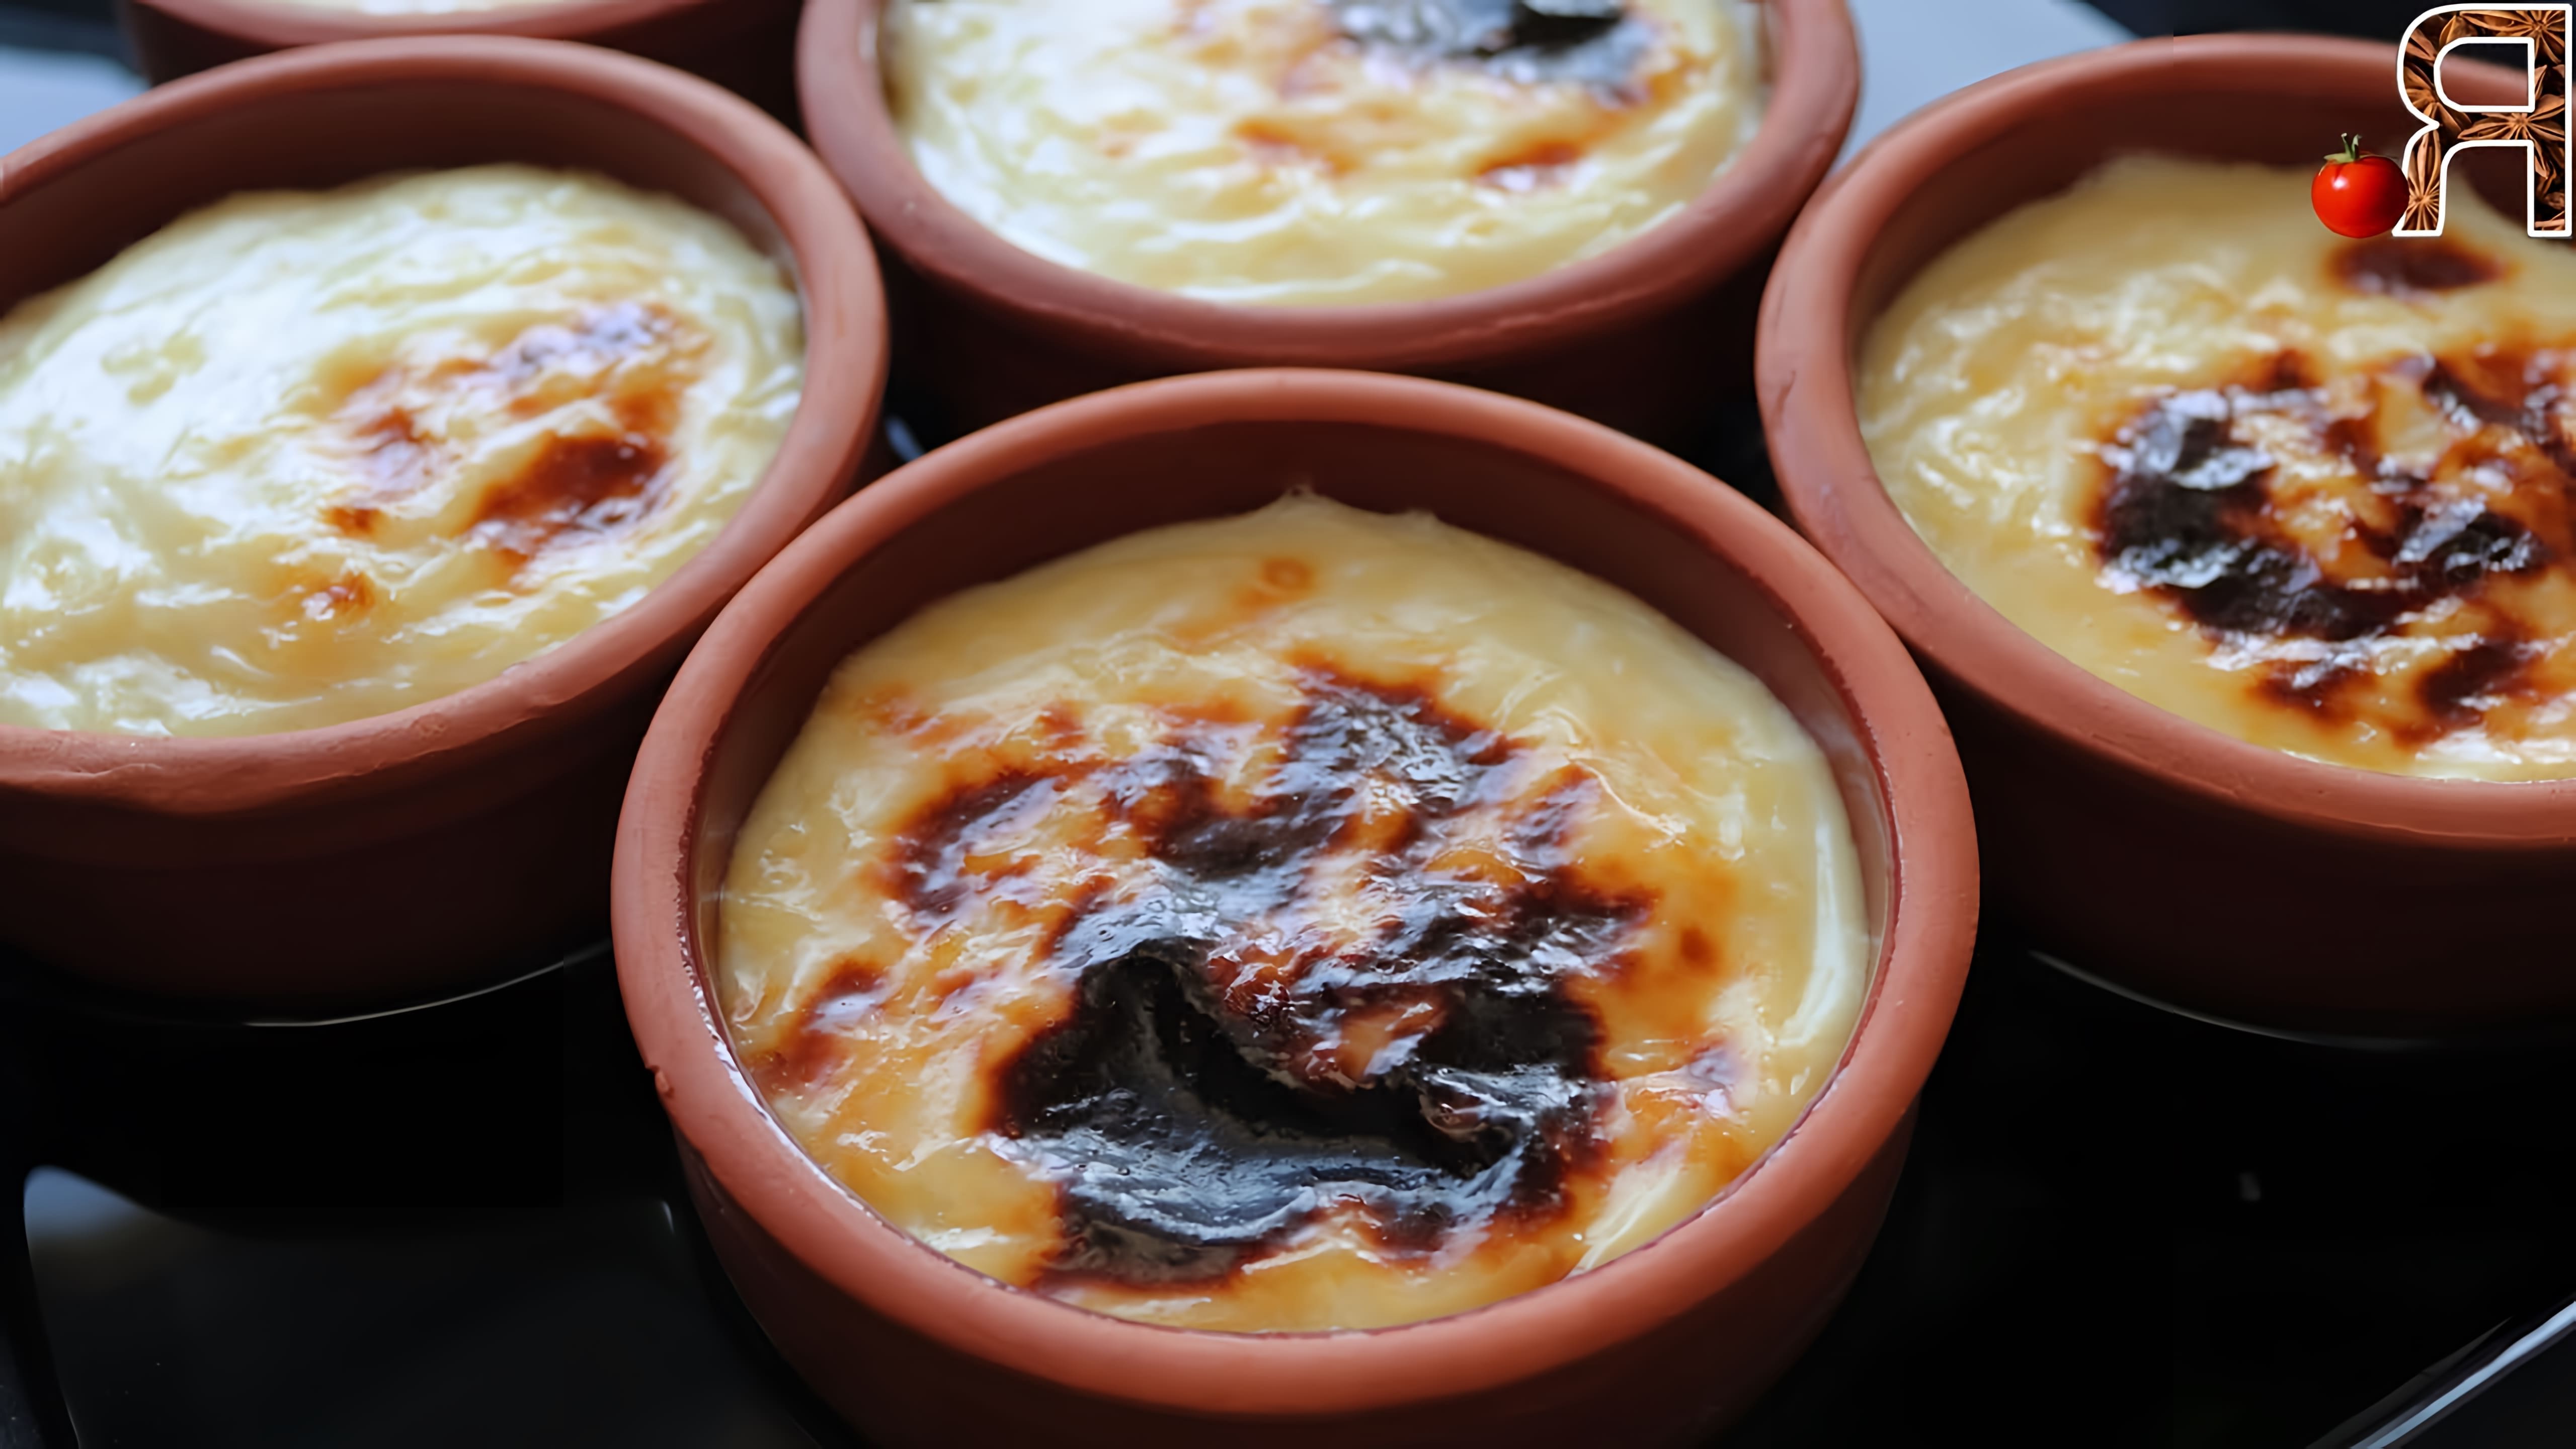 Турецкий рисовый пудинг Сютлач - это популярный турецкий молочный десерт, который готовится из риса, молока, сахара и специй